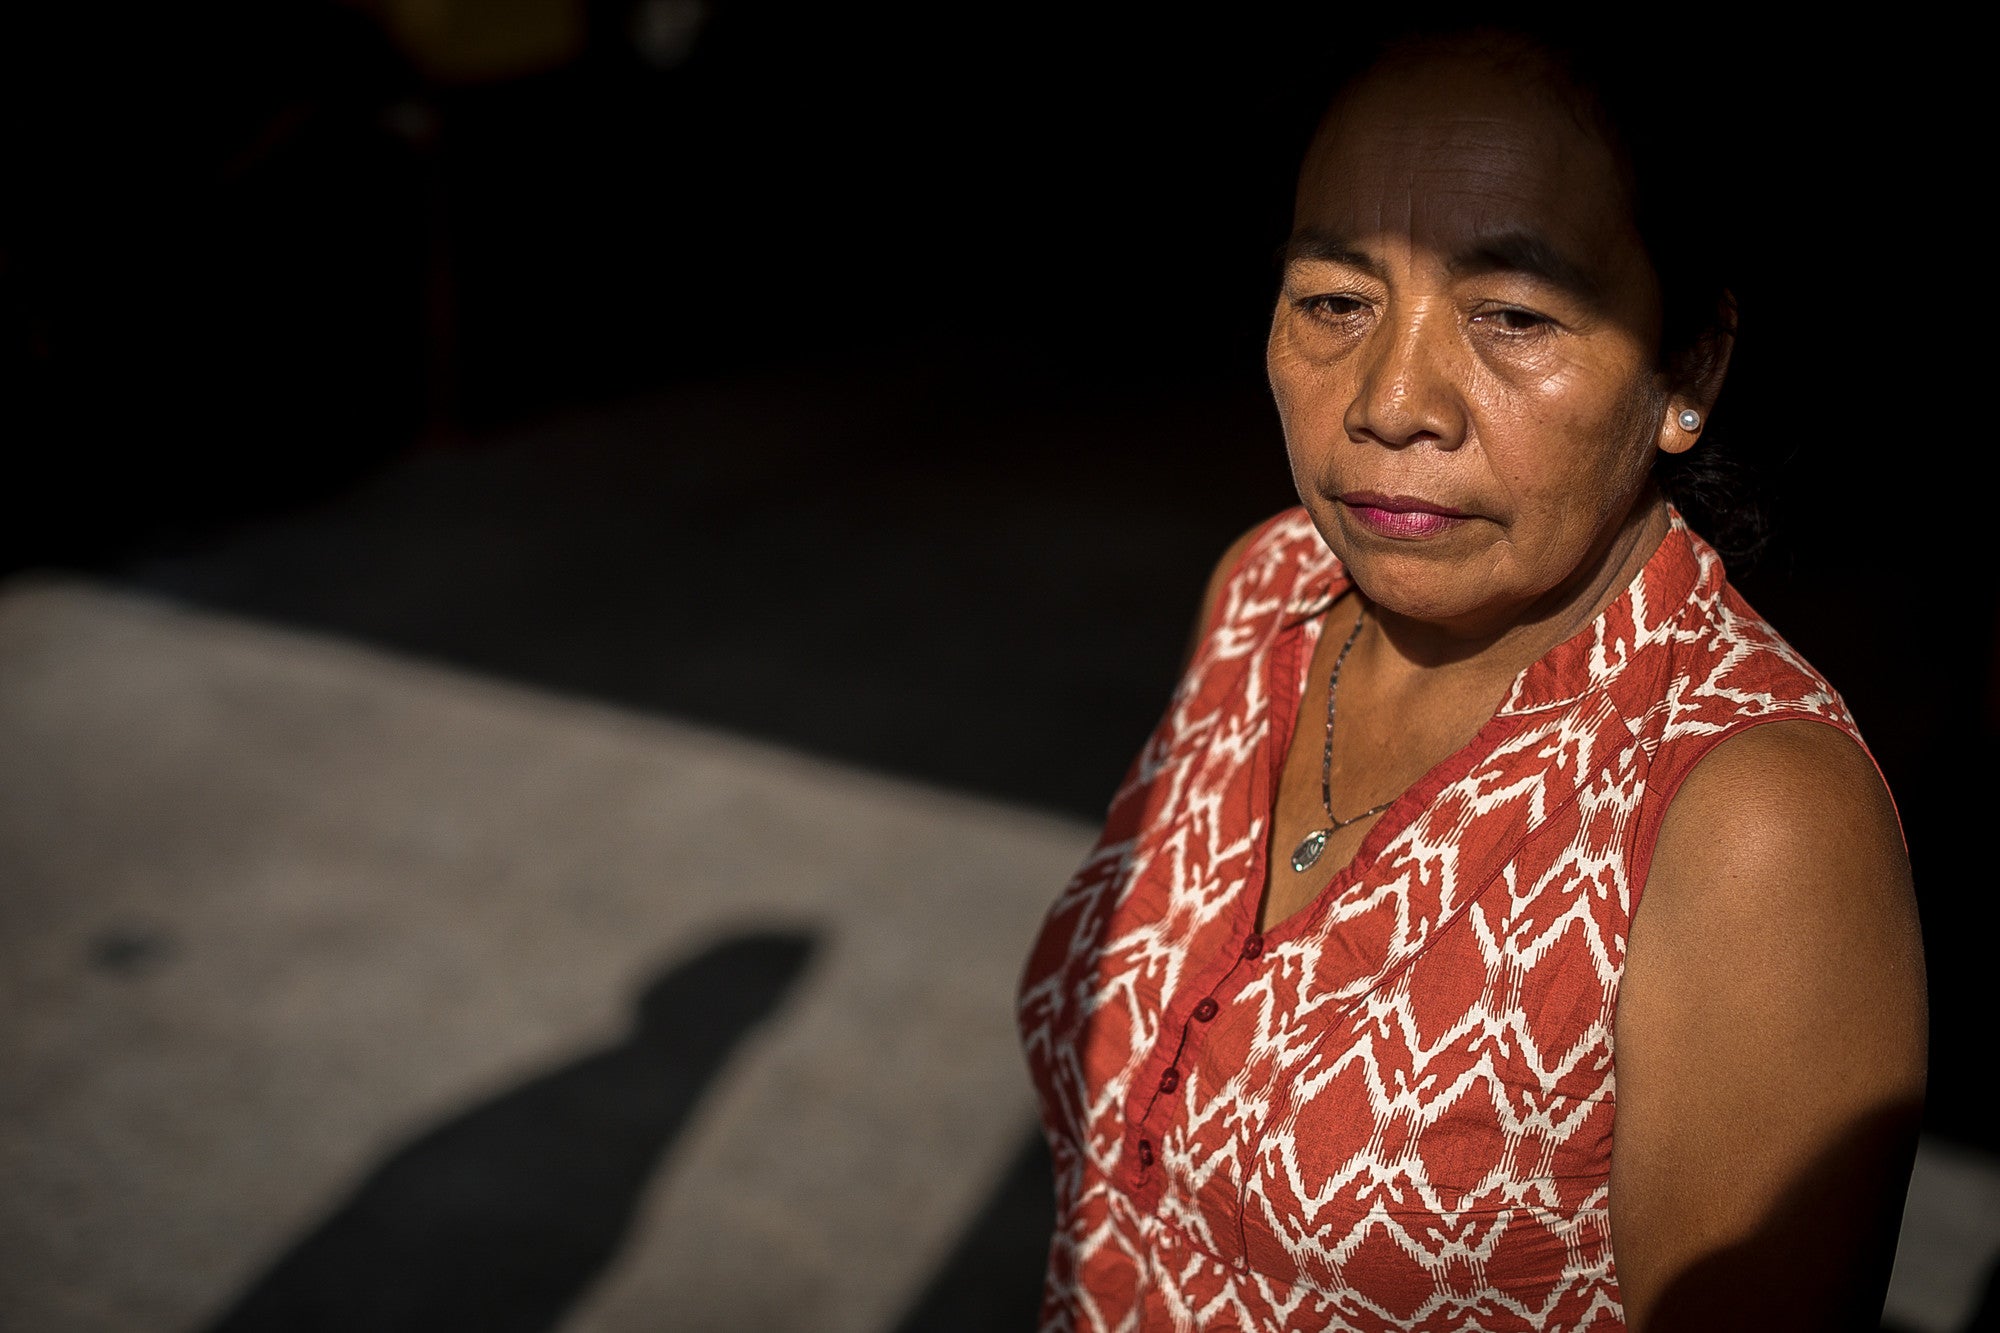 María Faustina fue fotografiada en la Ciudad de Guatemala el 13 de abril de 2018, como parte de la Campaña de Trabajadoras del Hogar de CARE. Ella mira hacia adelante en una habitación en penumbra.